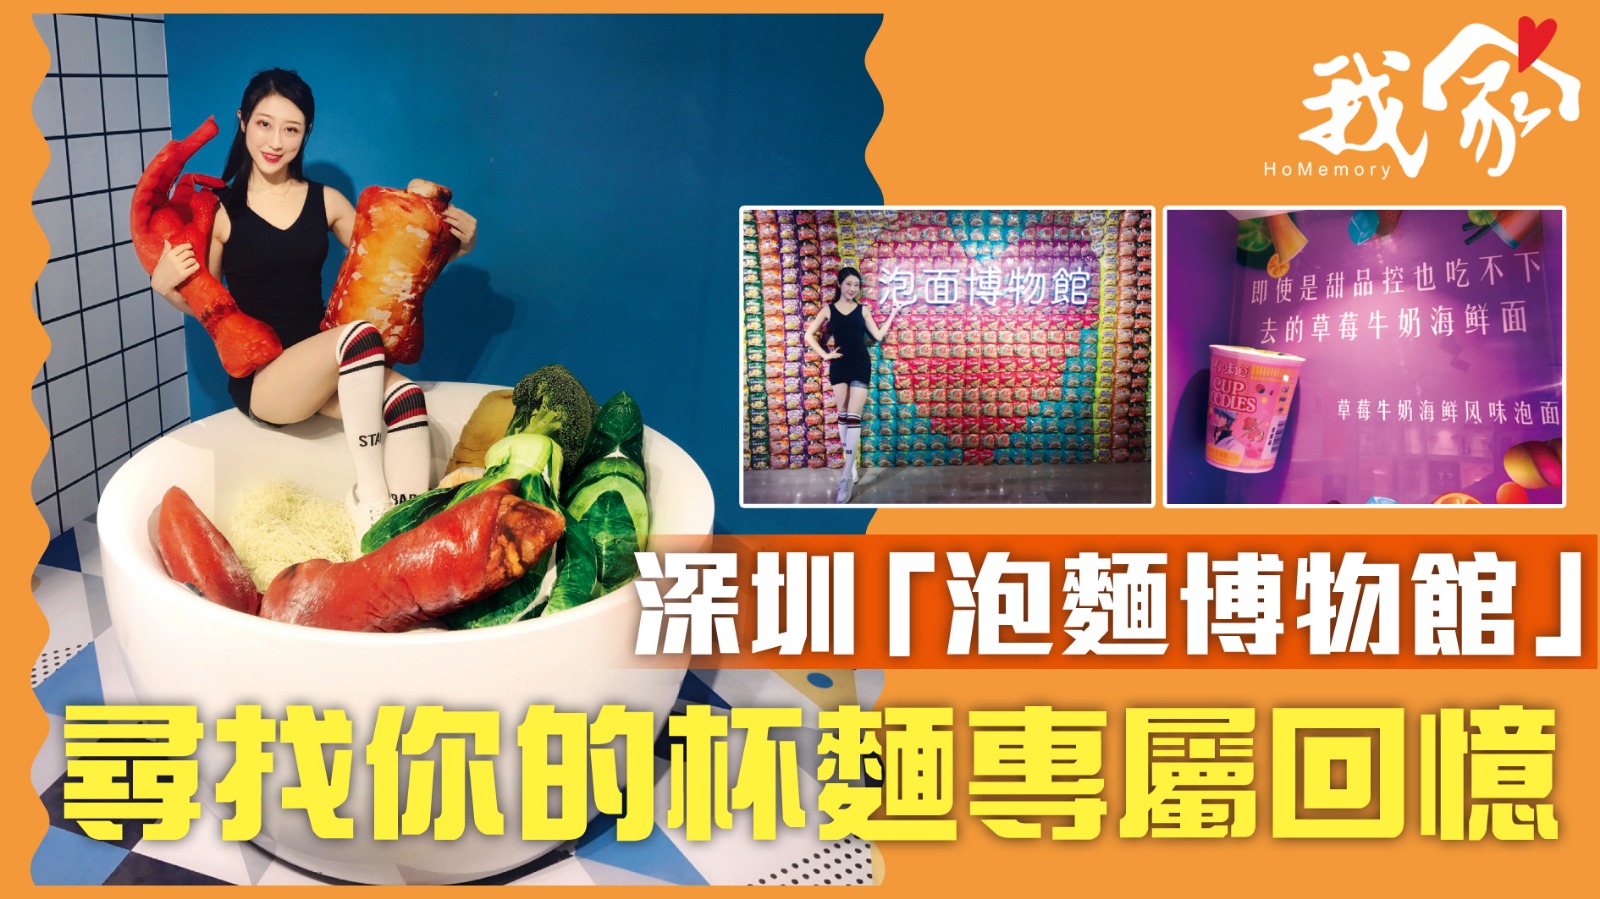 深圳「泡麵博物館」 尋找你的杯麵專屬回憶